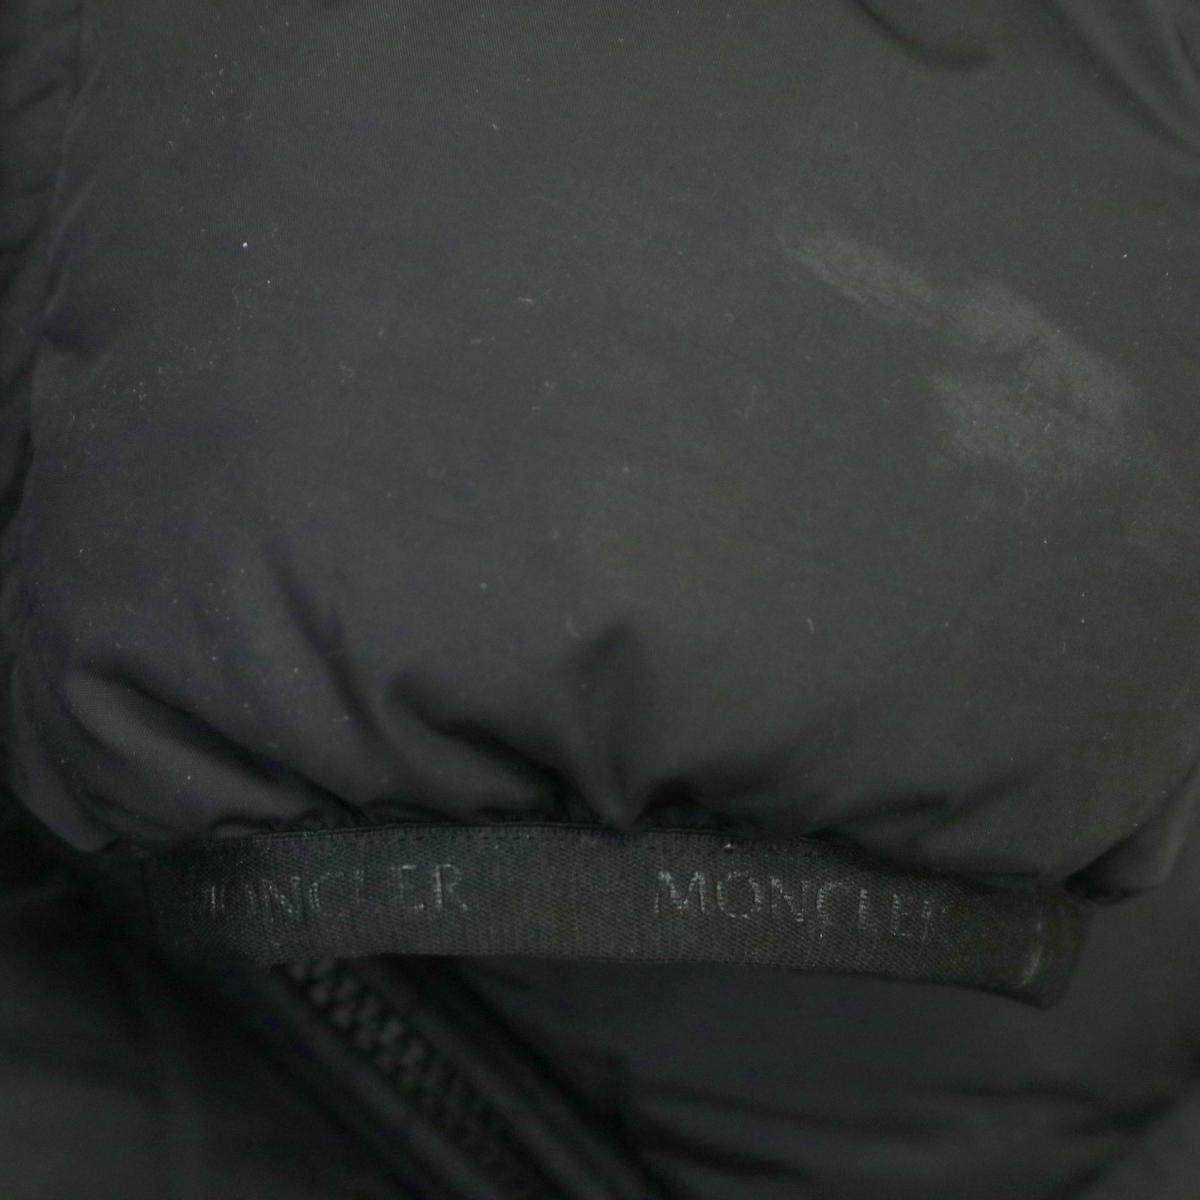 モンクレール MONTCLA モンクラ ダウンジャケット 41943 85 C0300 メンズ ブラック MONCLER  【アパレル・小物】